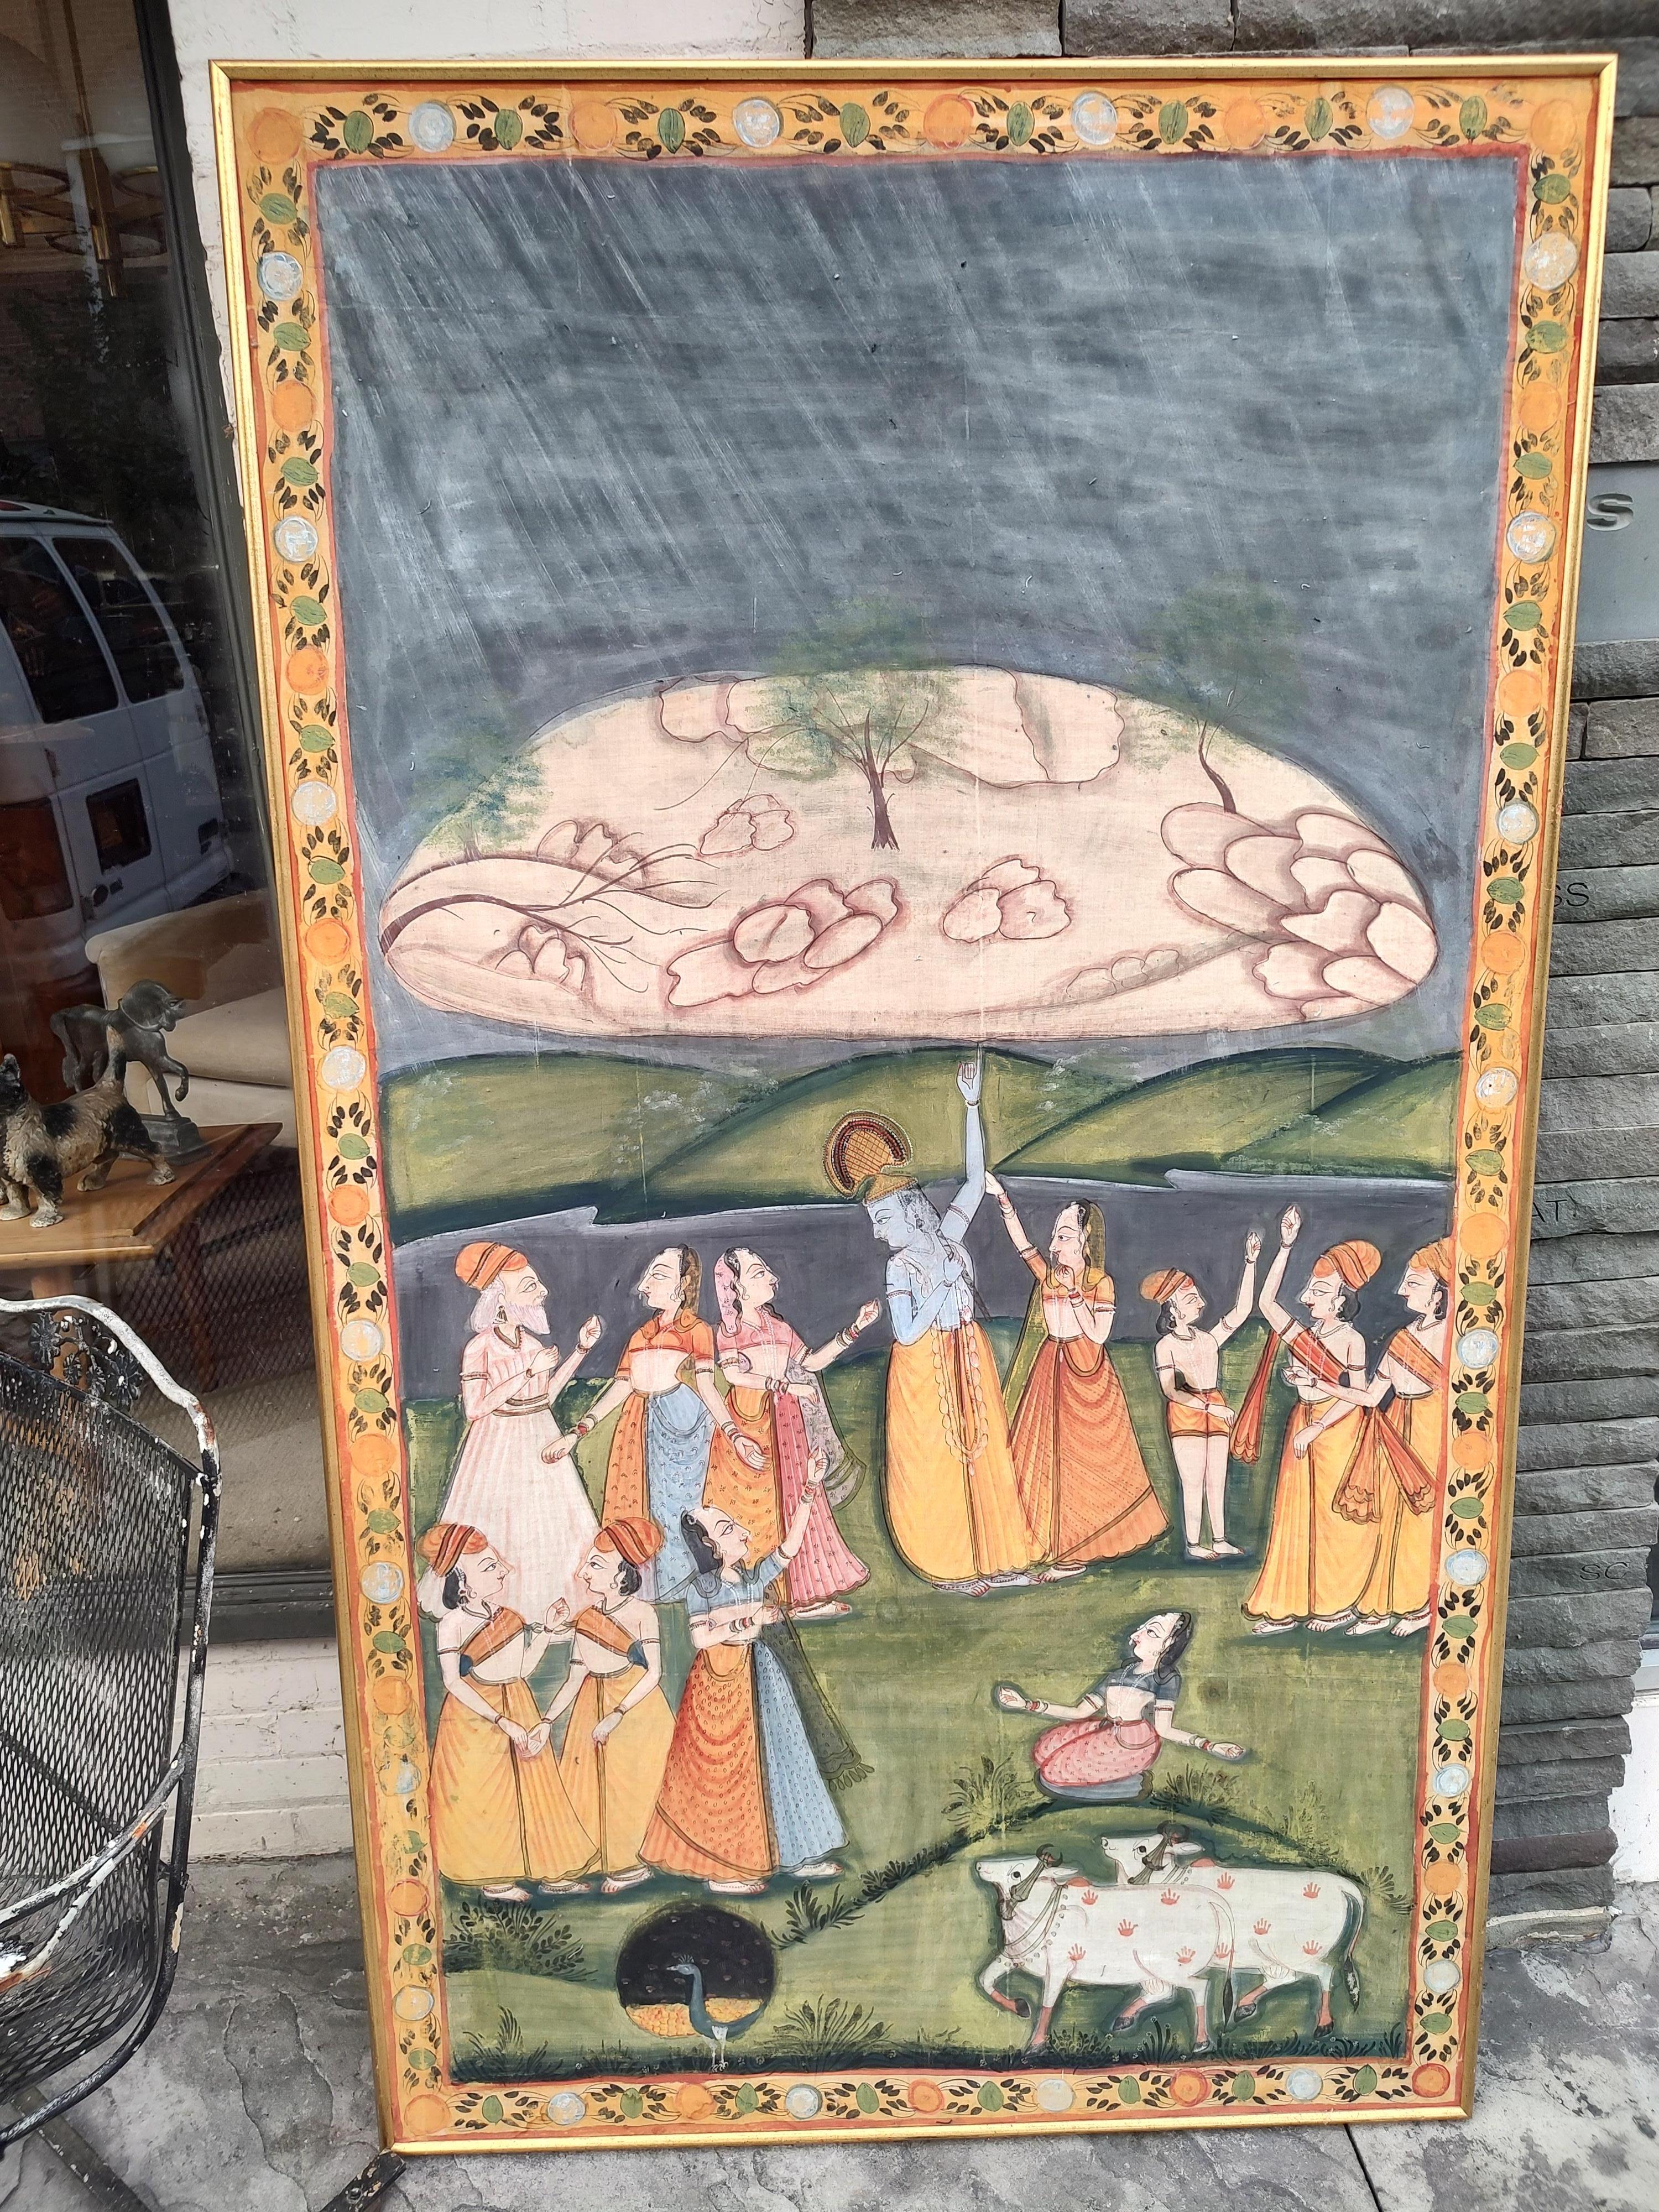 Grande peinture murale hindoue sur tissu de soie. Dimensions : 44,5 x 76 x 1,5 cm : 44,5 x 76 x 1,5. Encadré dans un cadre en bois doré.